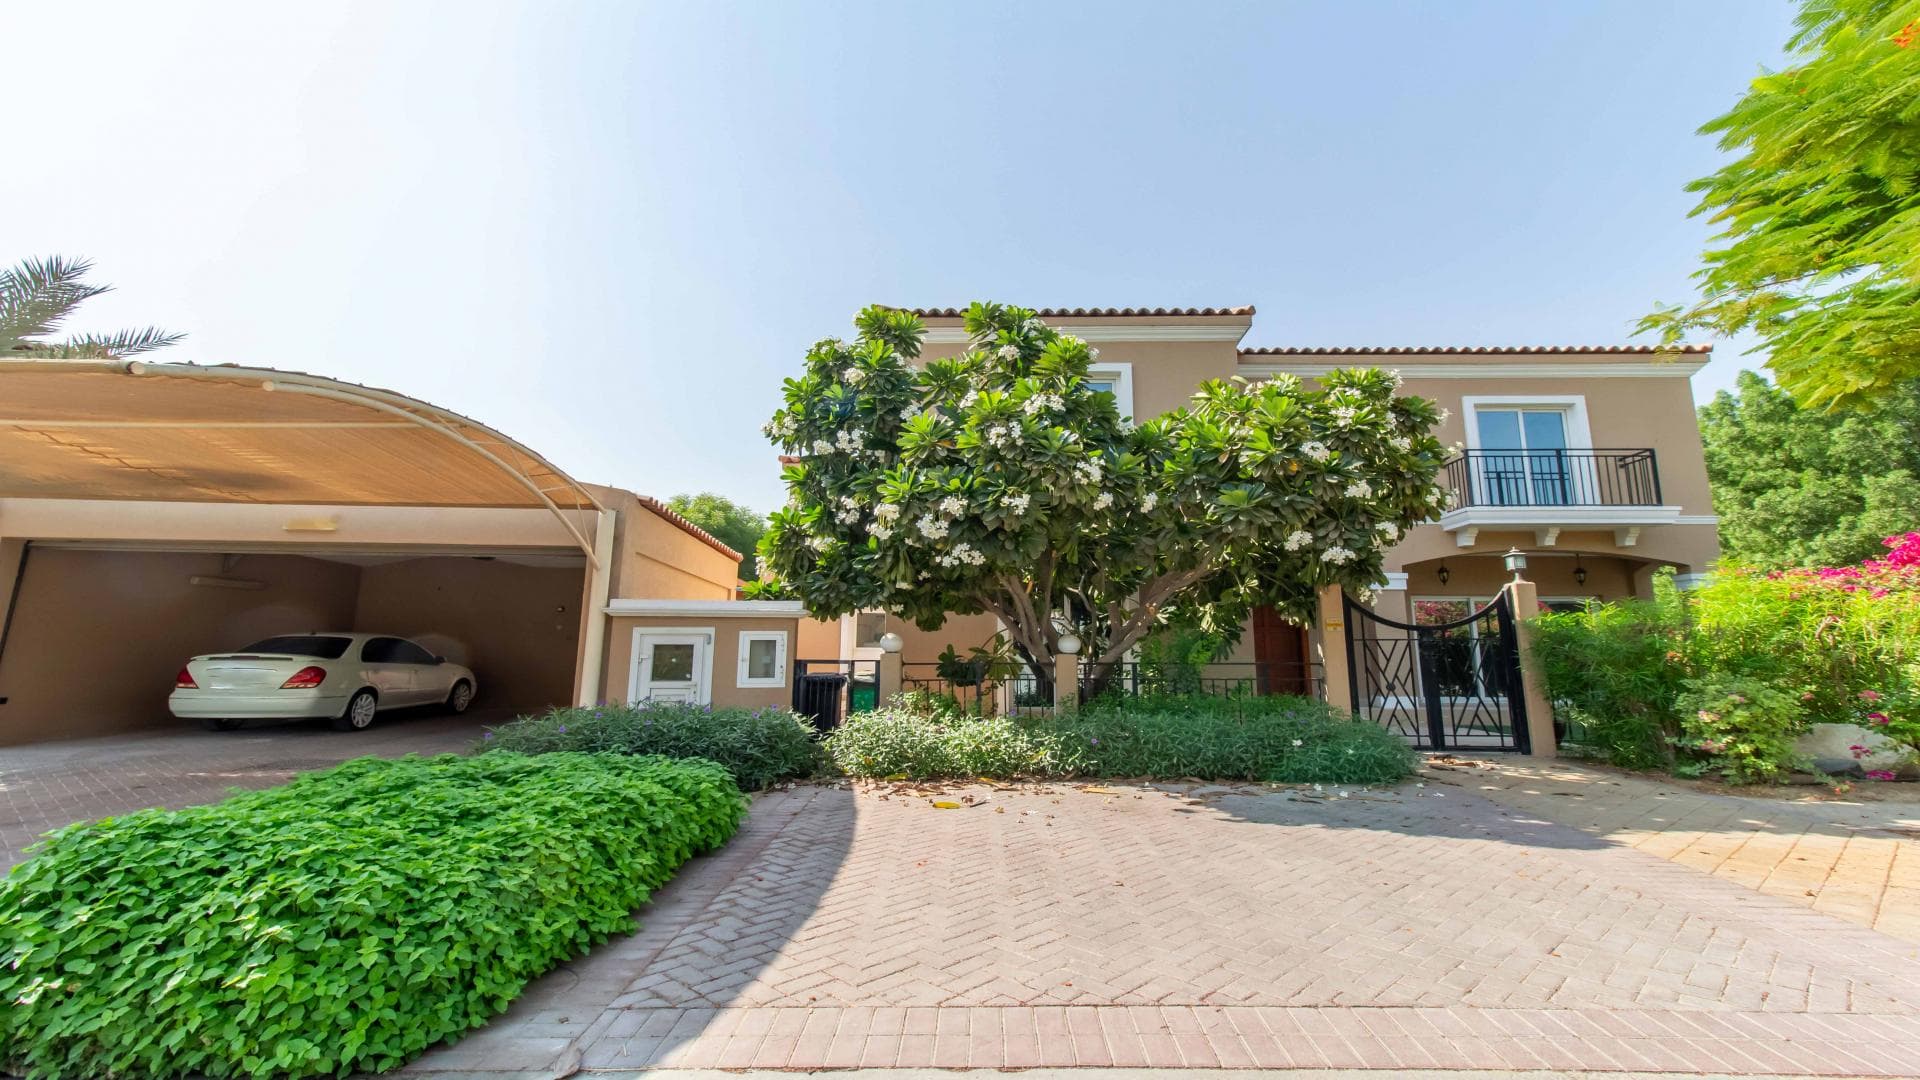 5 Bedroom Villa For Rent Al Thamam 36 Lp37795 2495db9bc4974e00.jpg